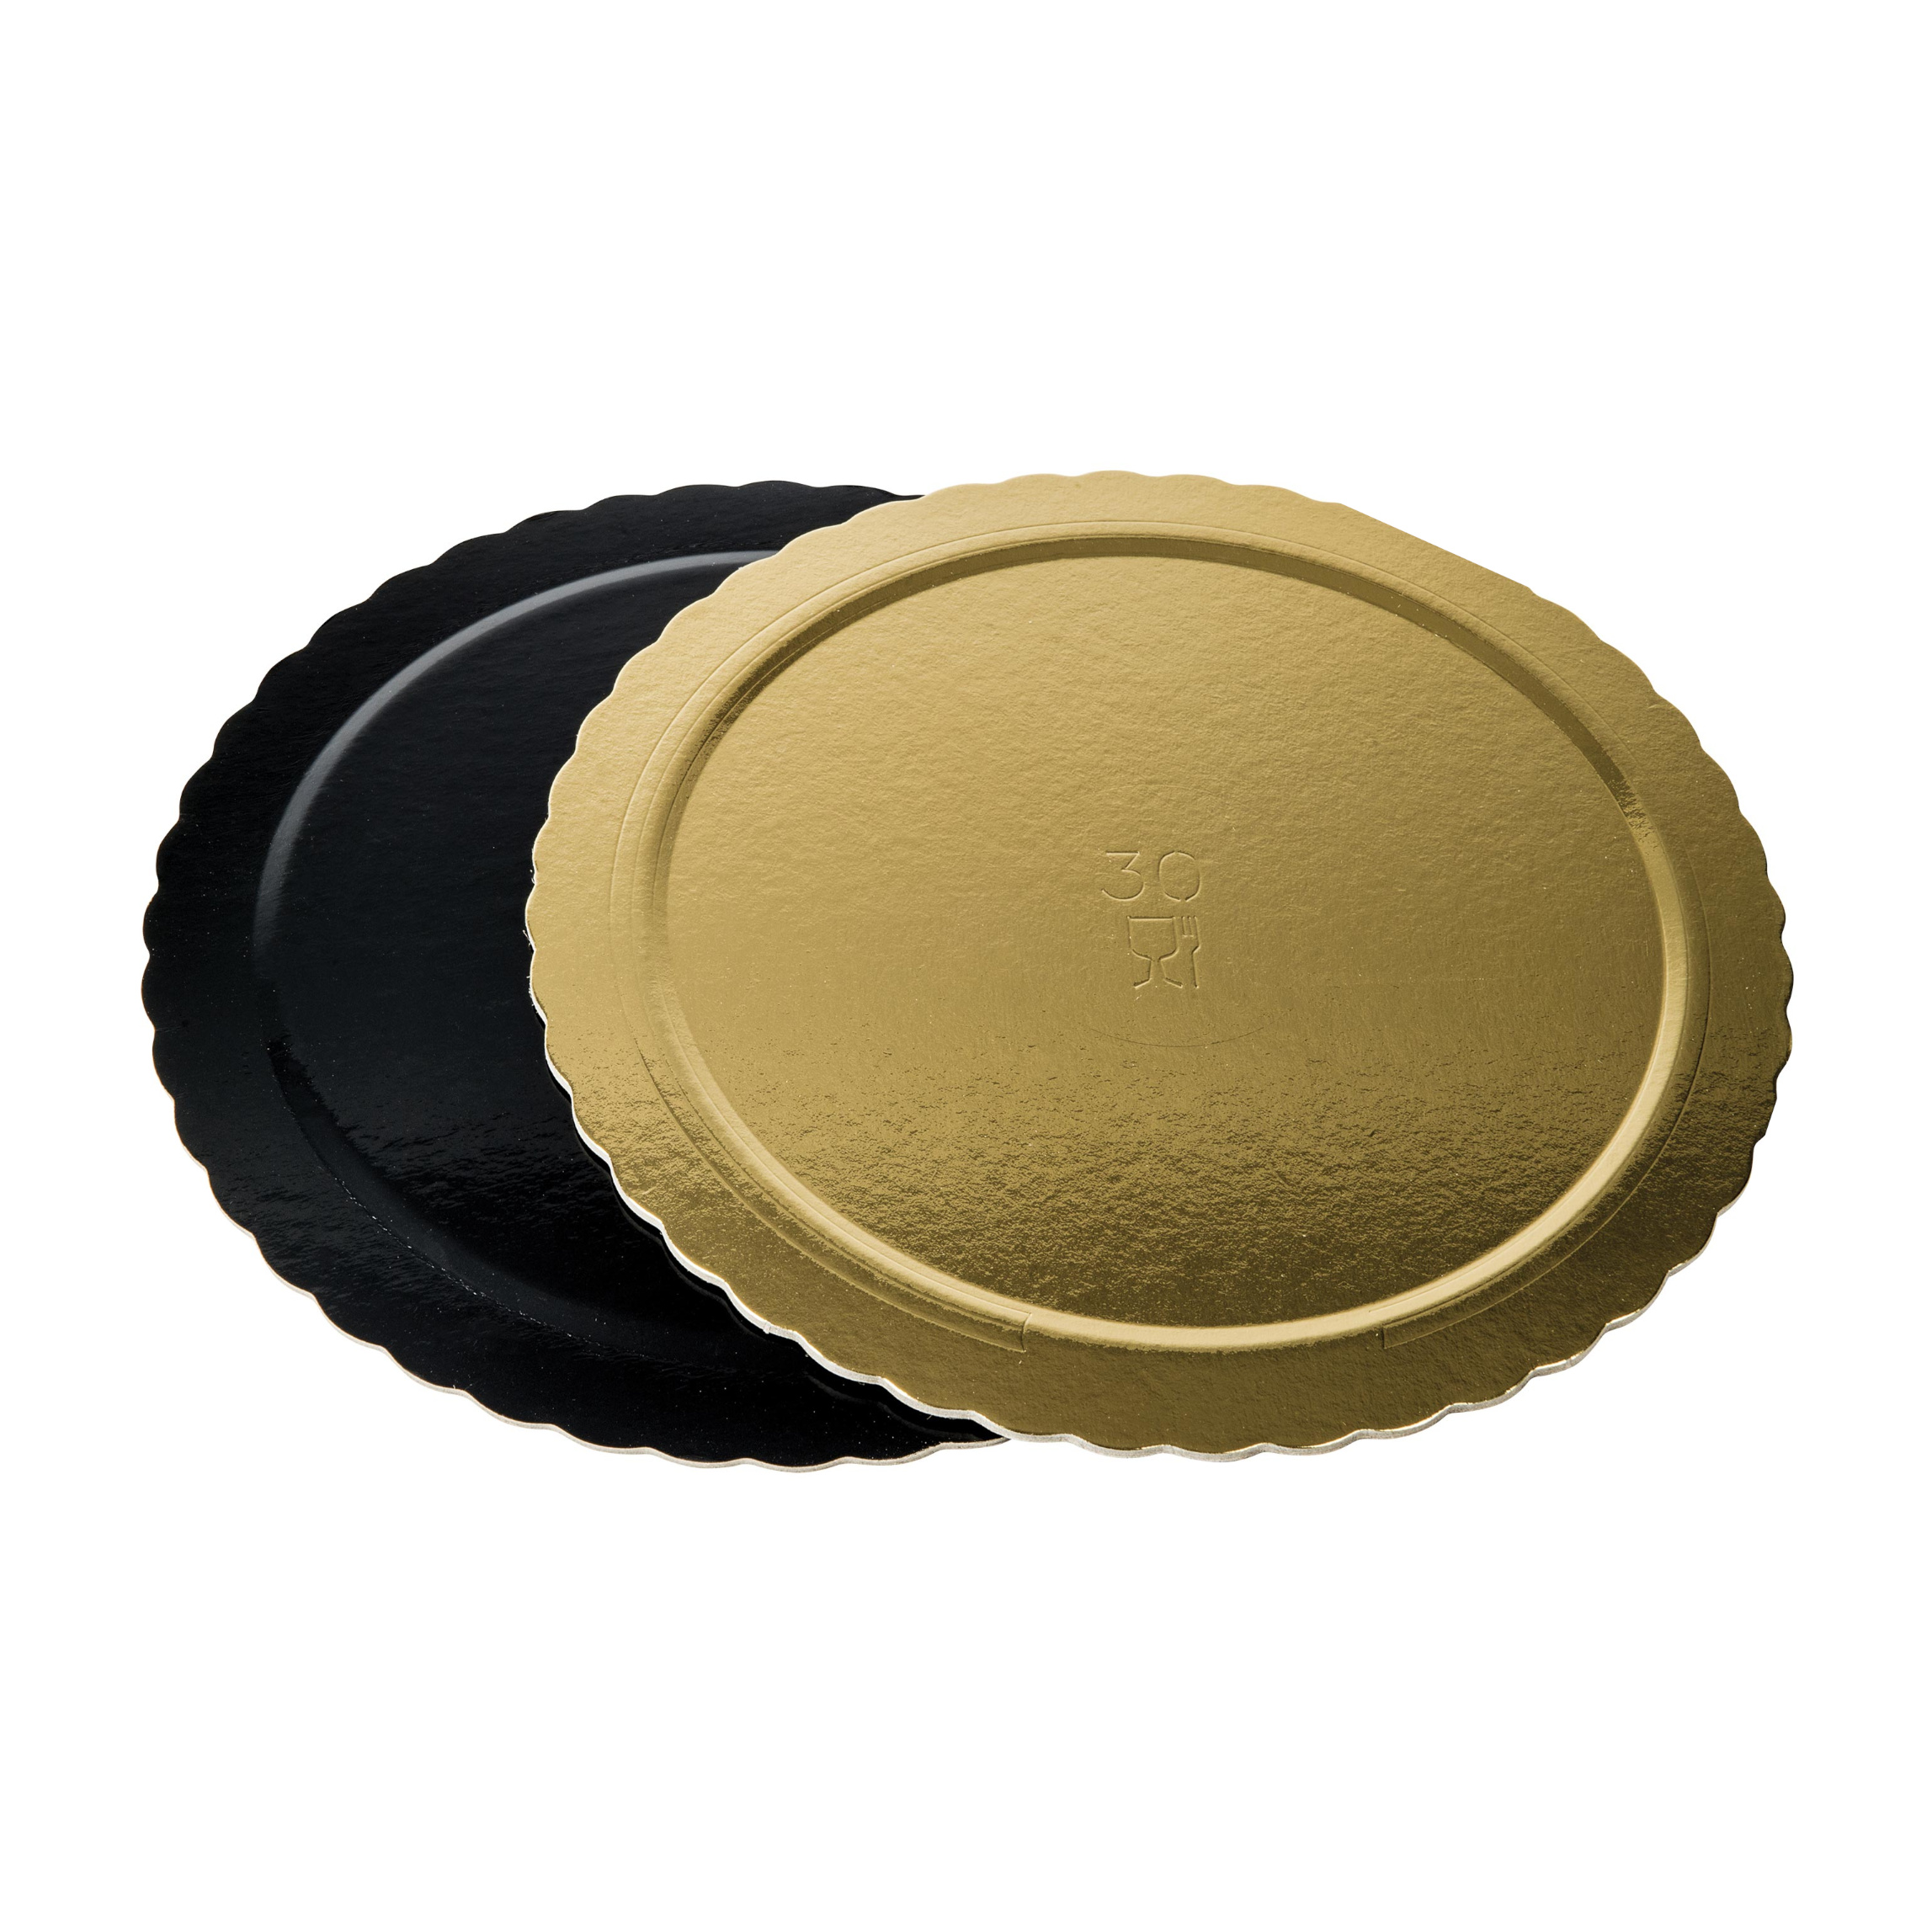 Dischi sottotorta kappati oro/nero 18cm pacchetto da 10kg